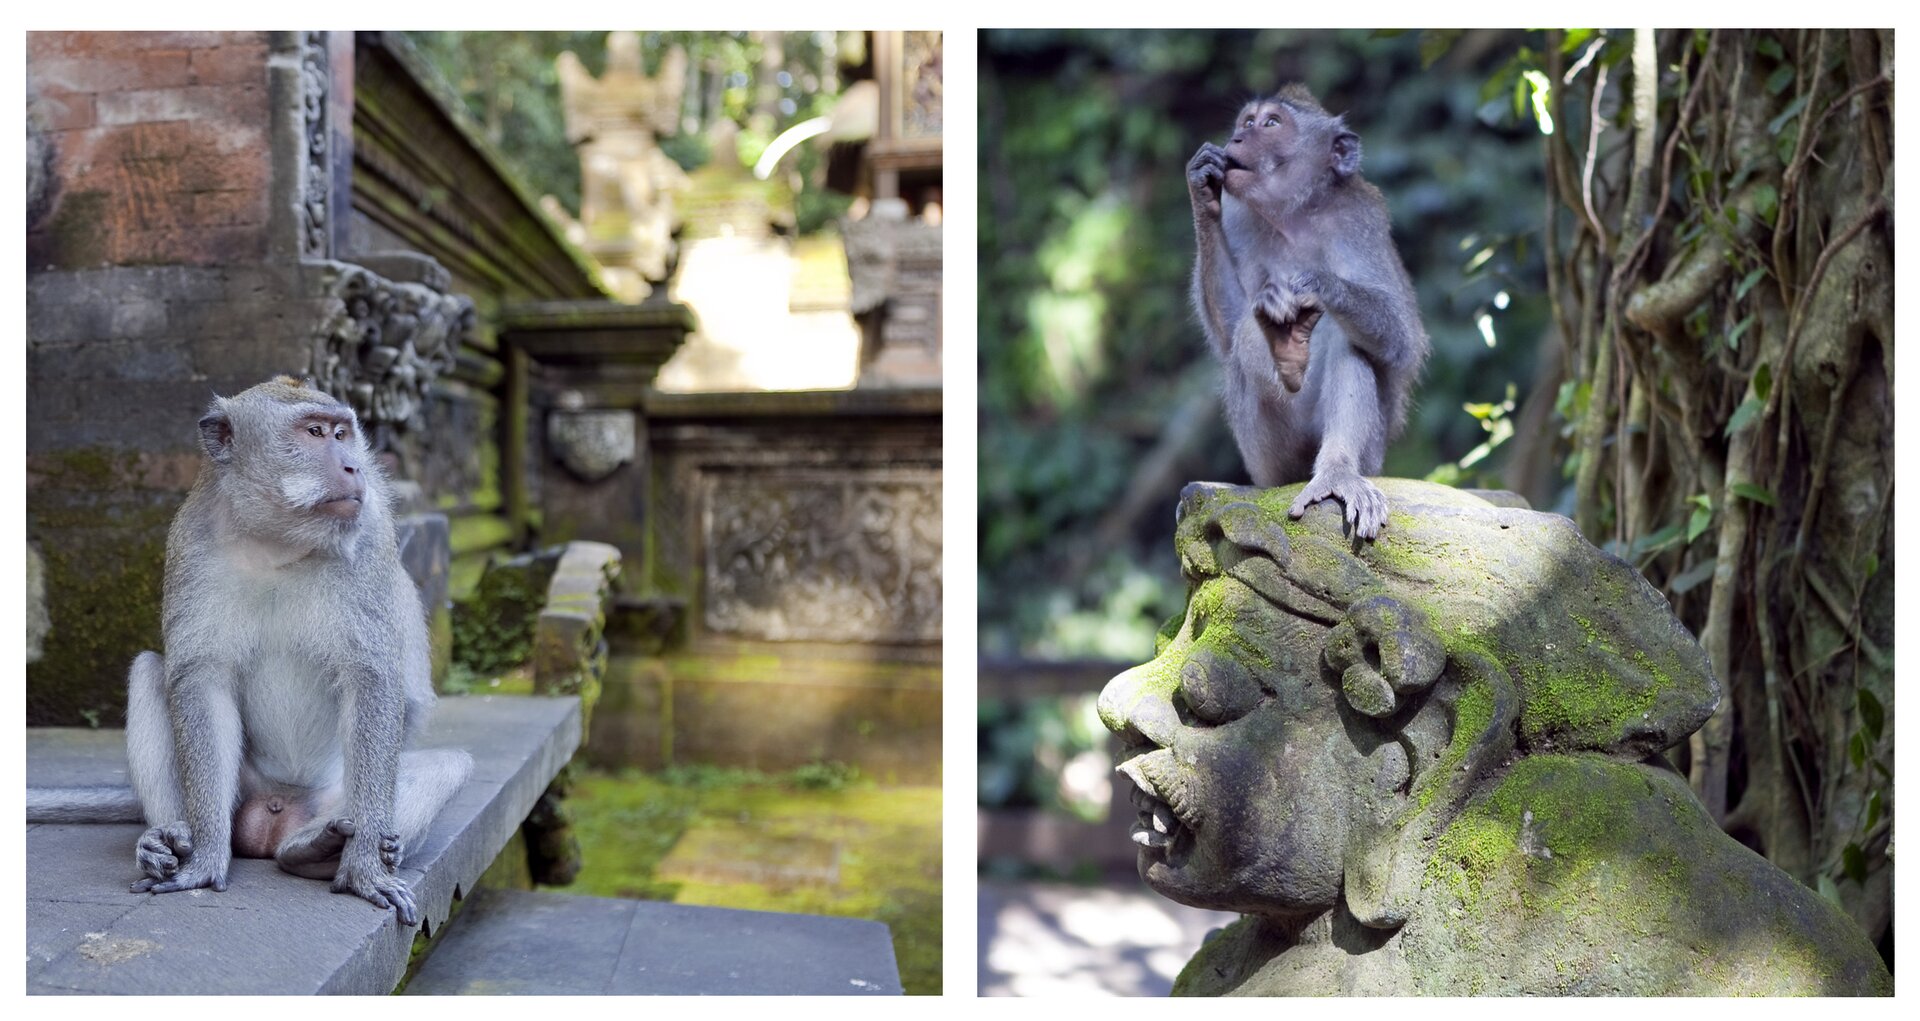 Fotografie przedstawiają małpy, siedzące w świątyni w Indiach. Ta z lewej siedzi na stopniu przy murze. Ta z prawej siedzi na głowie kamiennego posągu, przy oplecionym lianami drzewie.